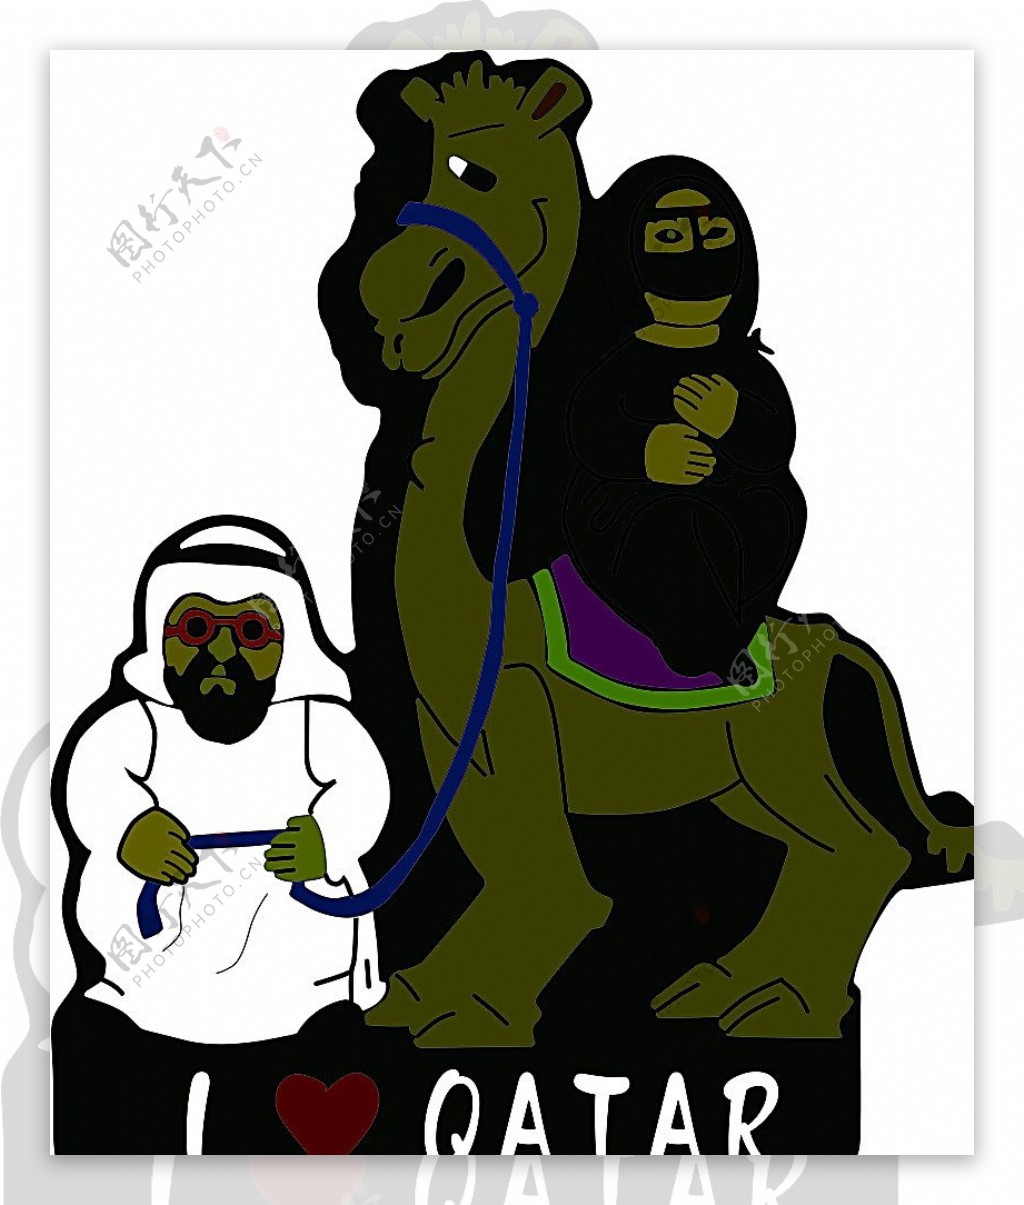 卡塔尔卡通人物骆驼西亚洲图片